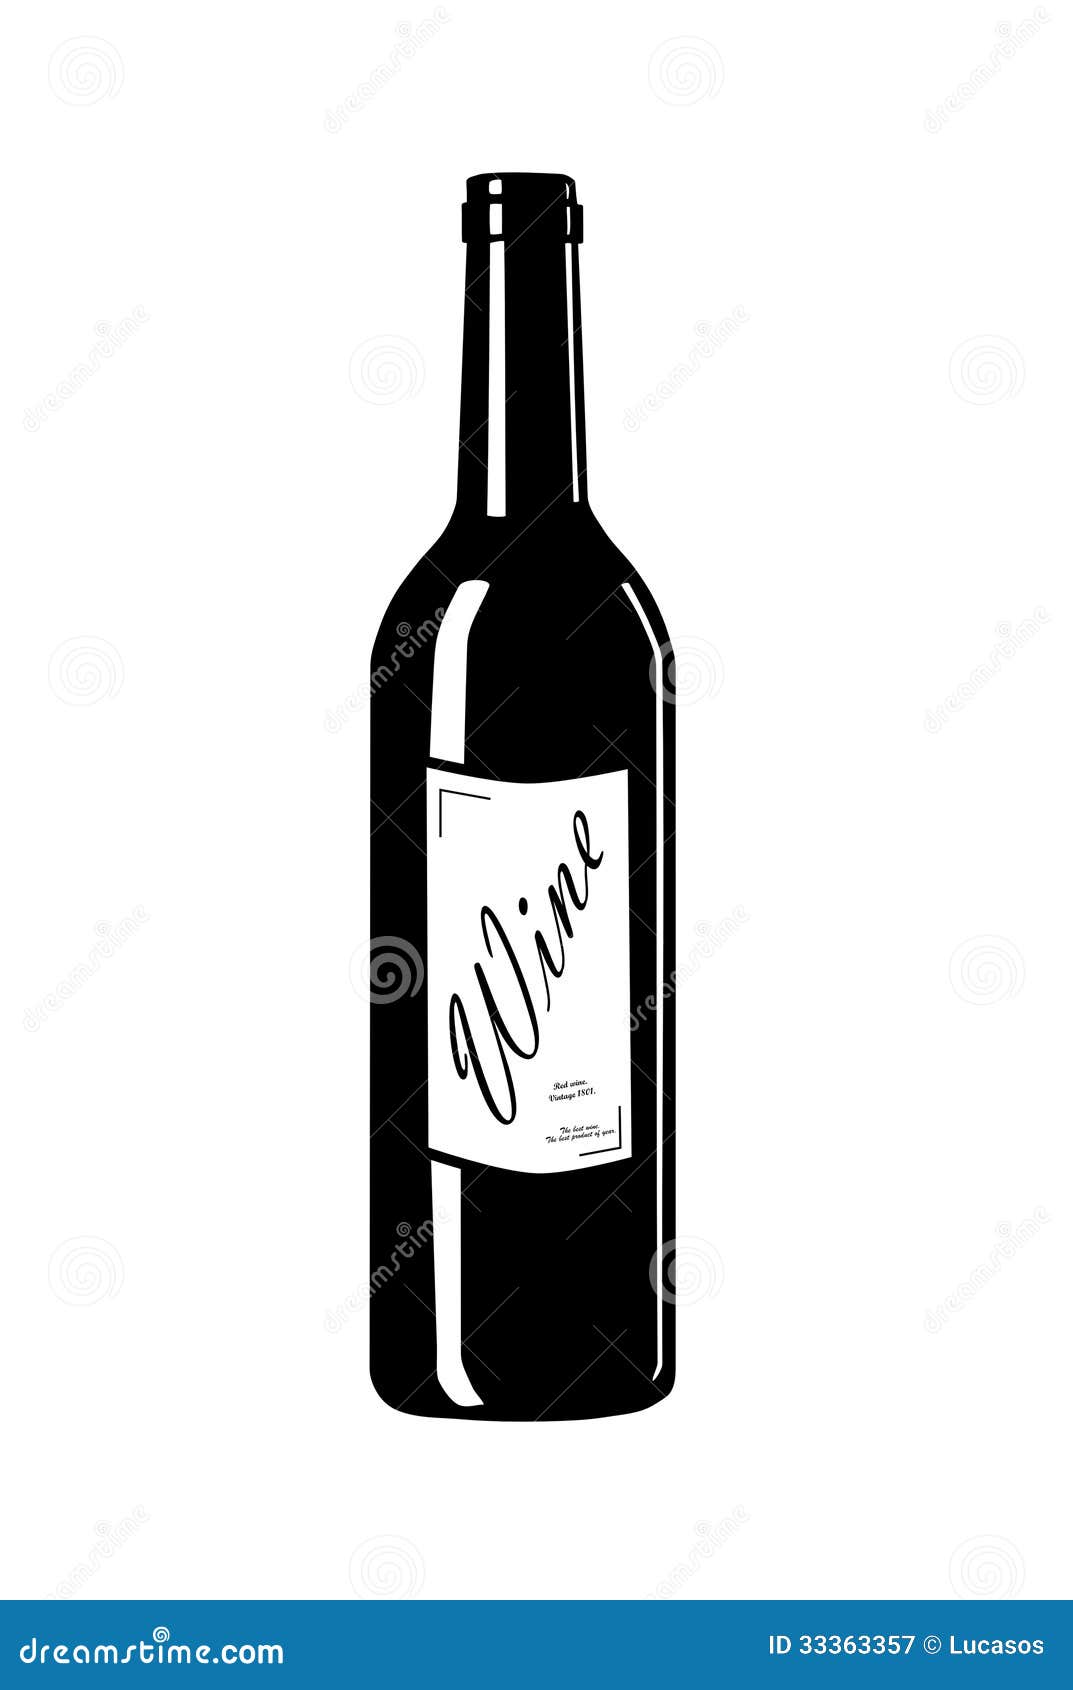 wine label clipart - photo #43